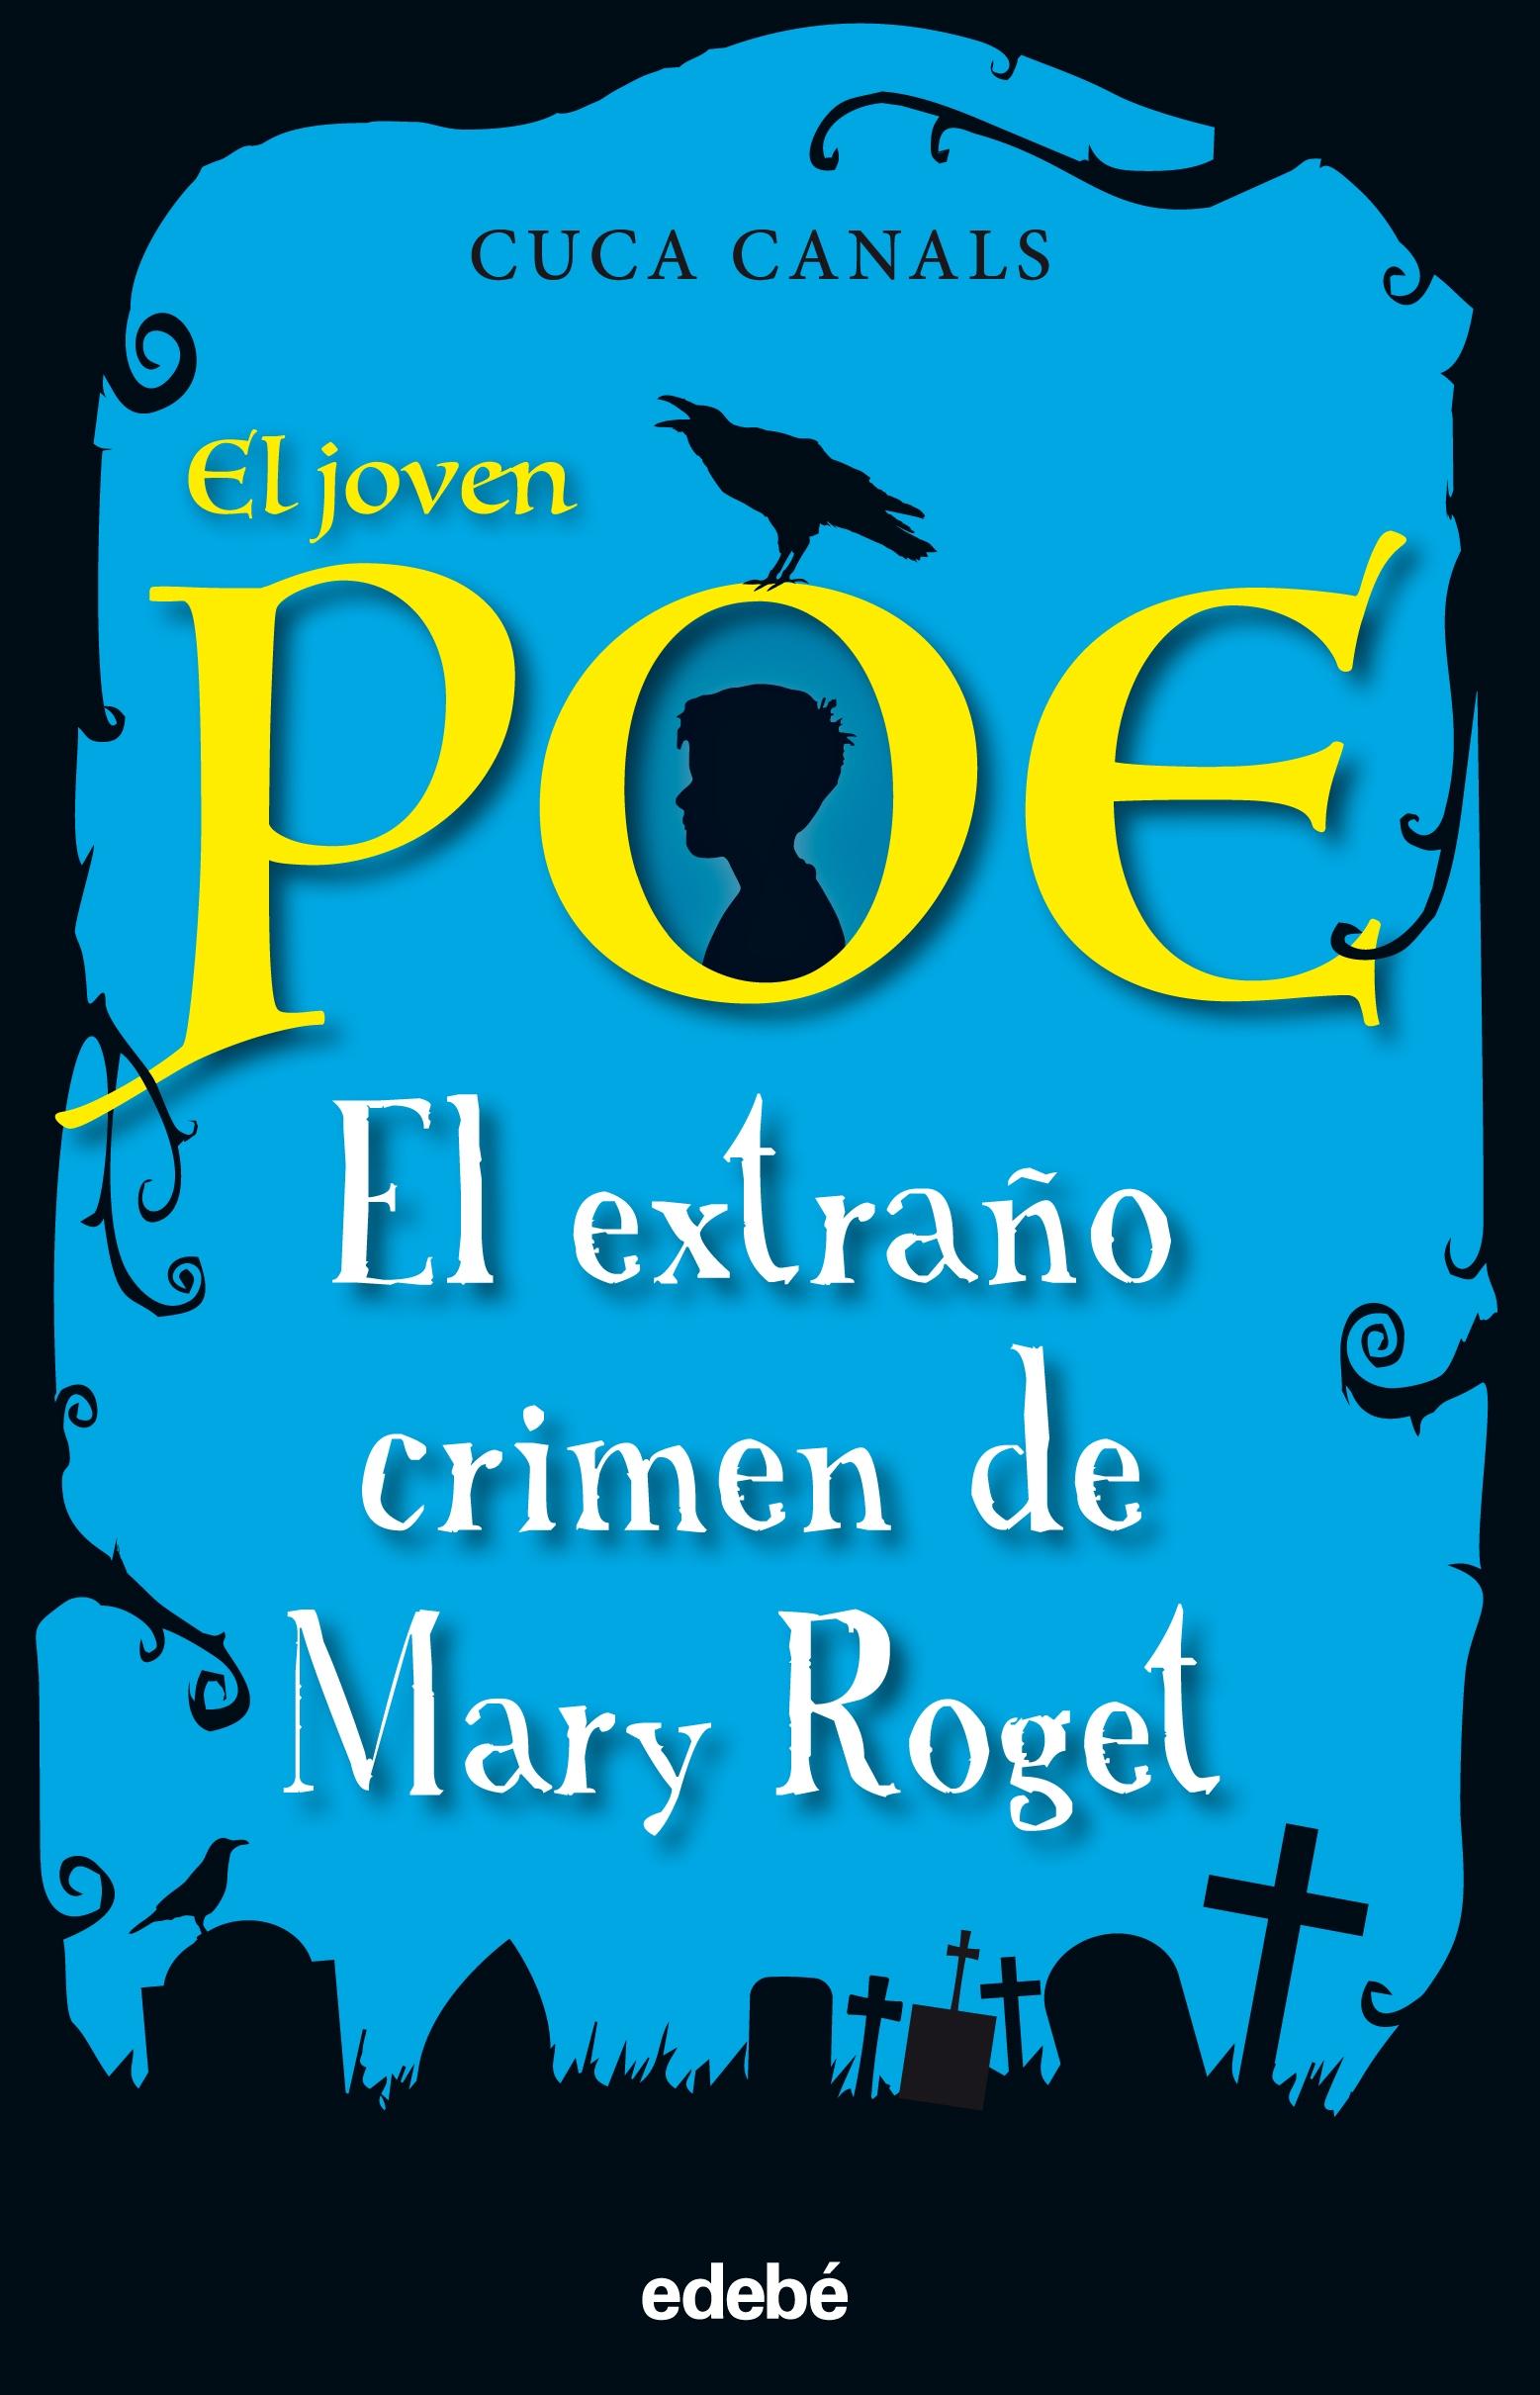 Joven Poe Extraño Crimen de Mary Roget 2. 